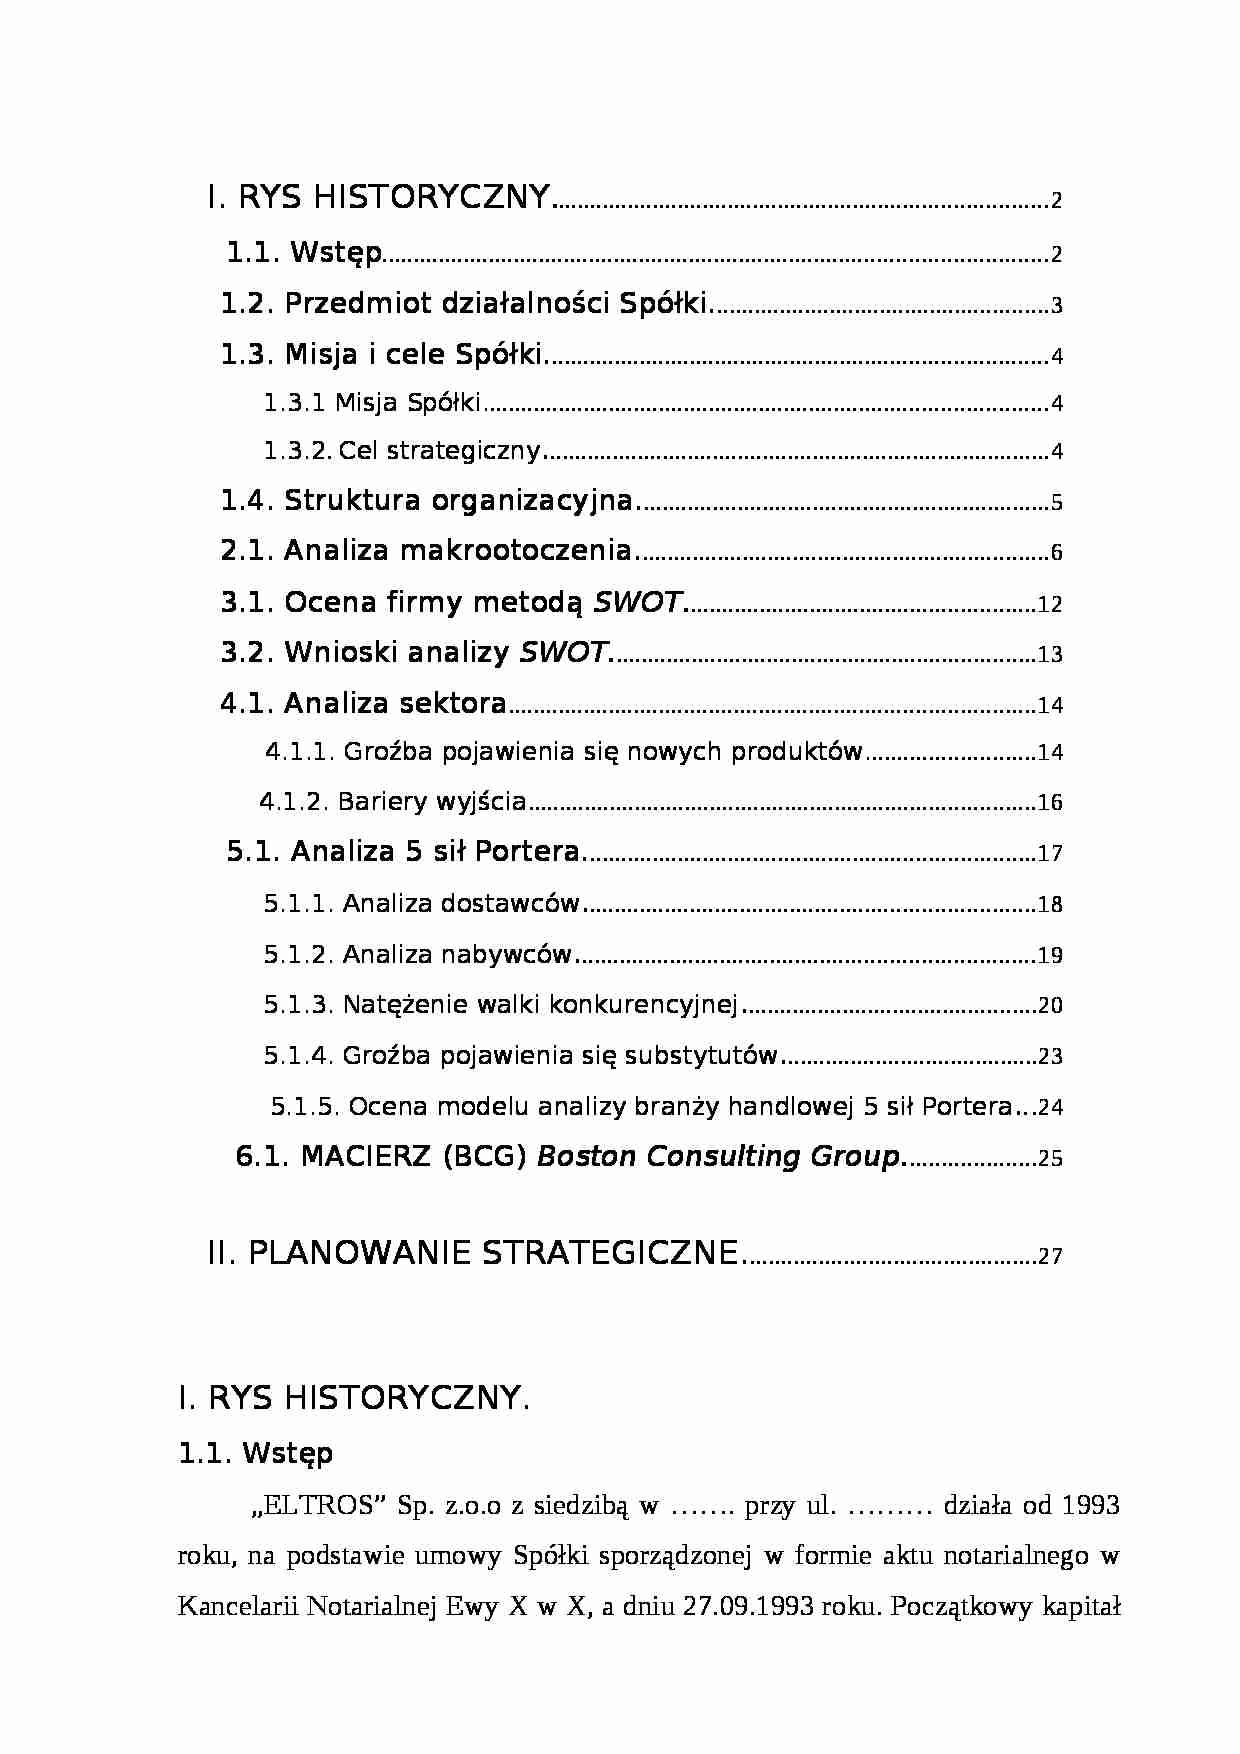 Analiza strategiczna - spółka wielobranżowa - strona 1